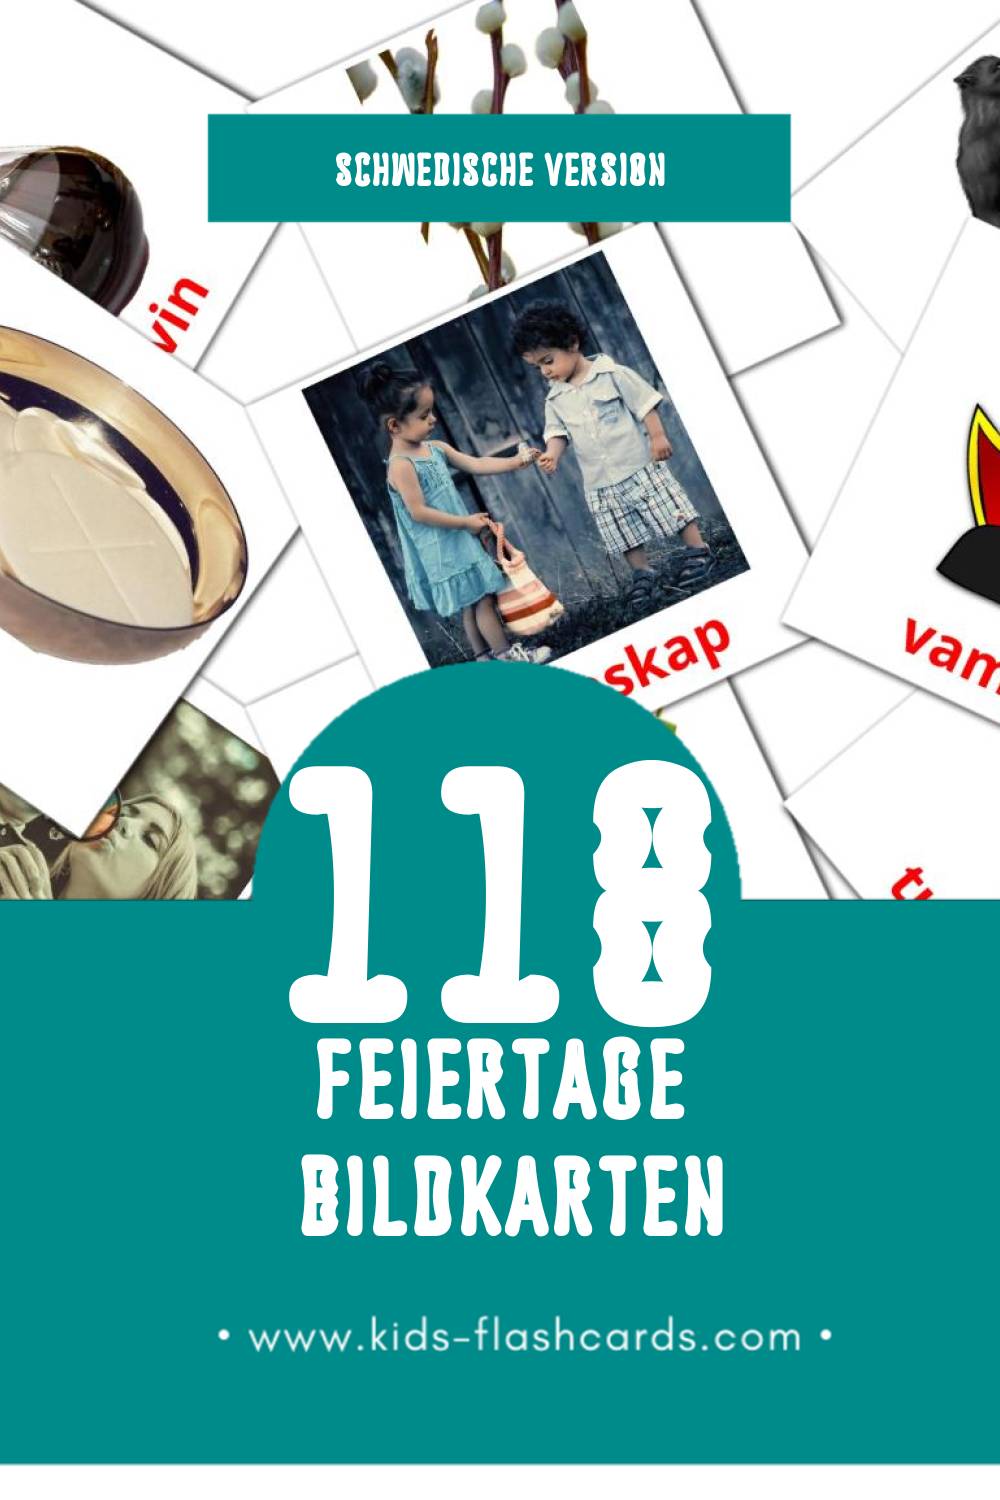 Visual Högtider Flashcards für Kleinkinder (118 Karten in Schwedisch)